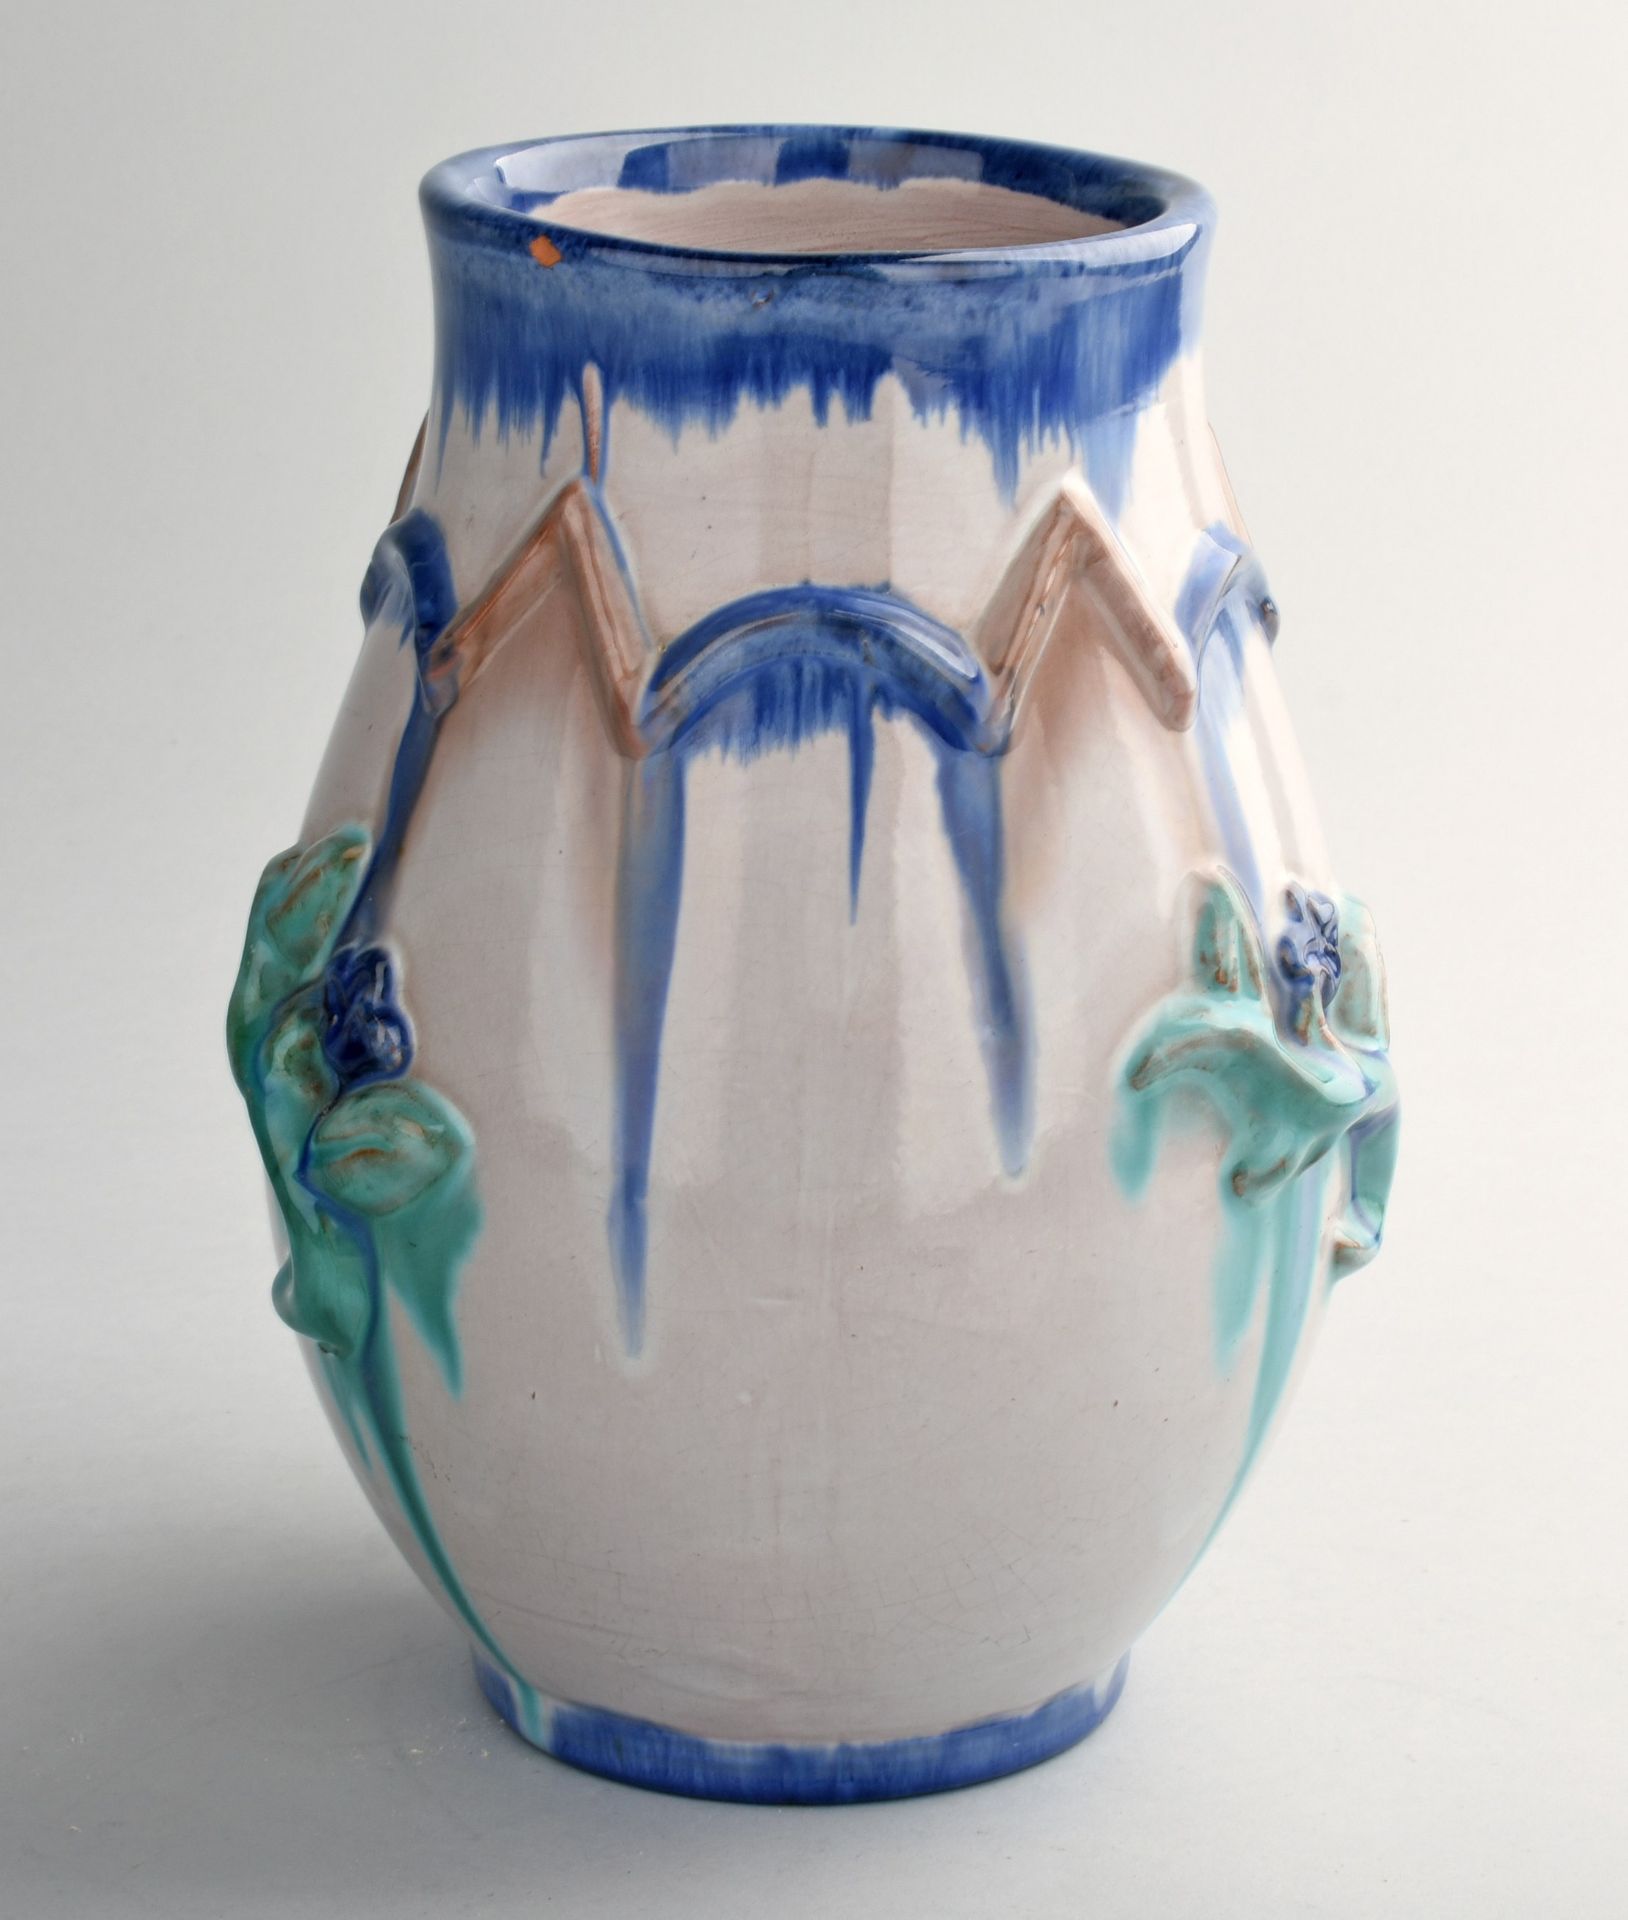 Vase gemarkt "Made in Austria", ziegelroter Scherben, bauchige Wandung mit leicht ausschwingendem - Bild 3 aus 3